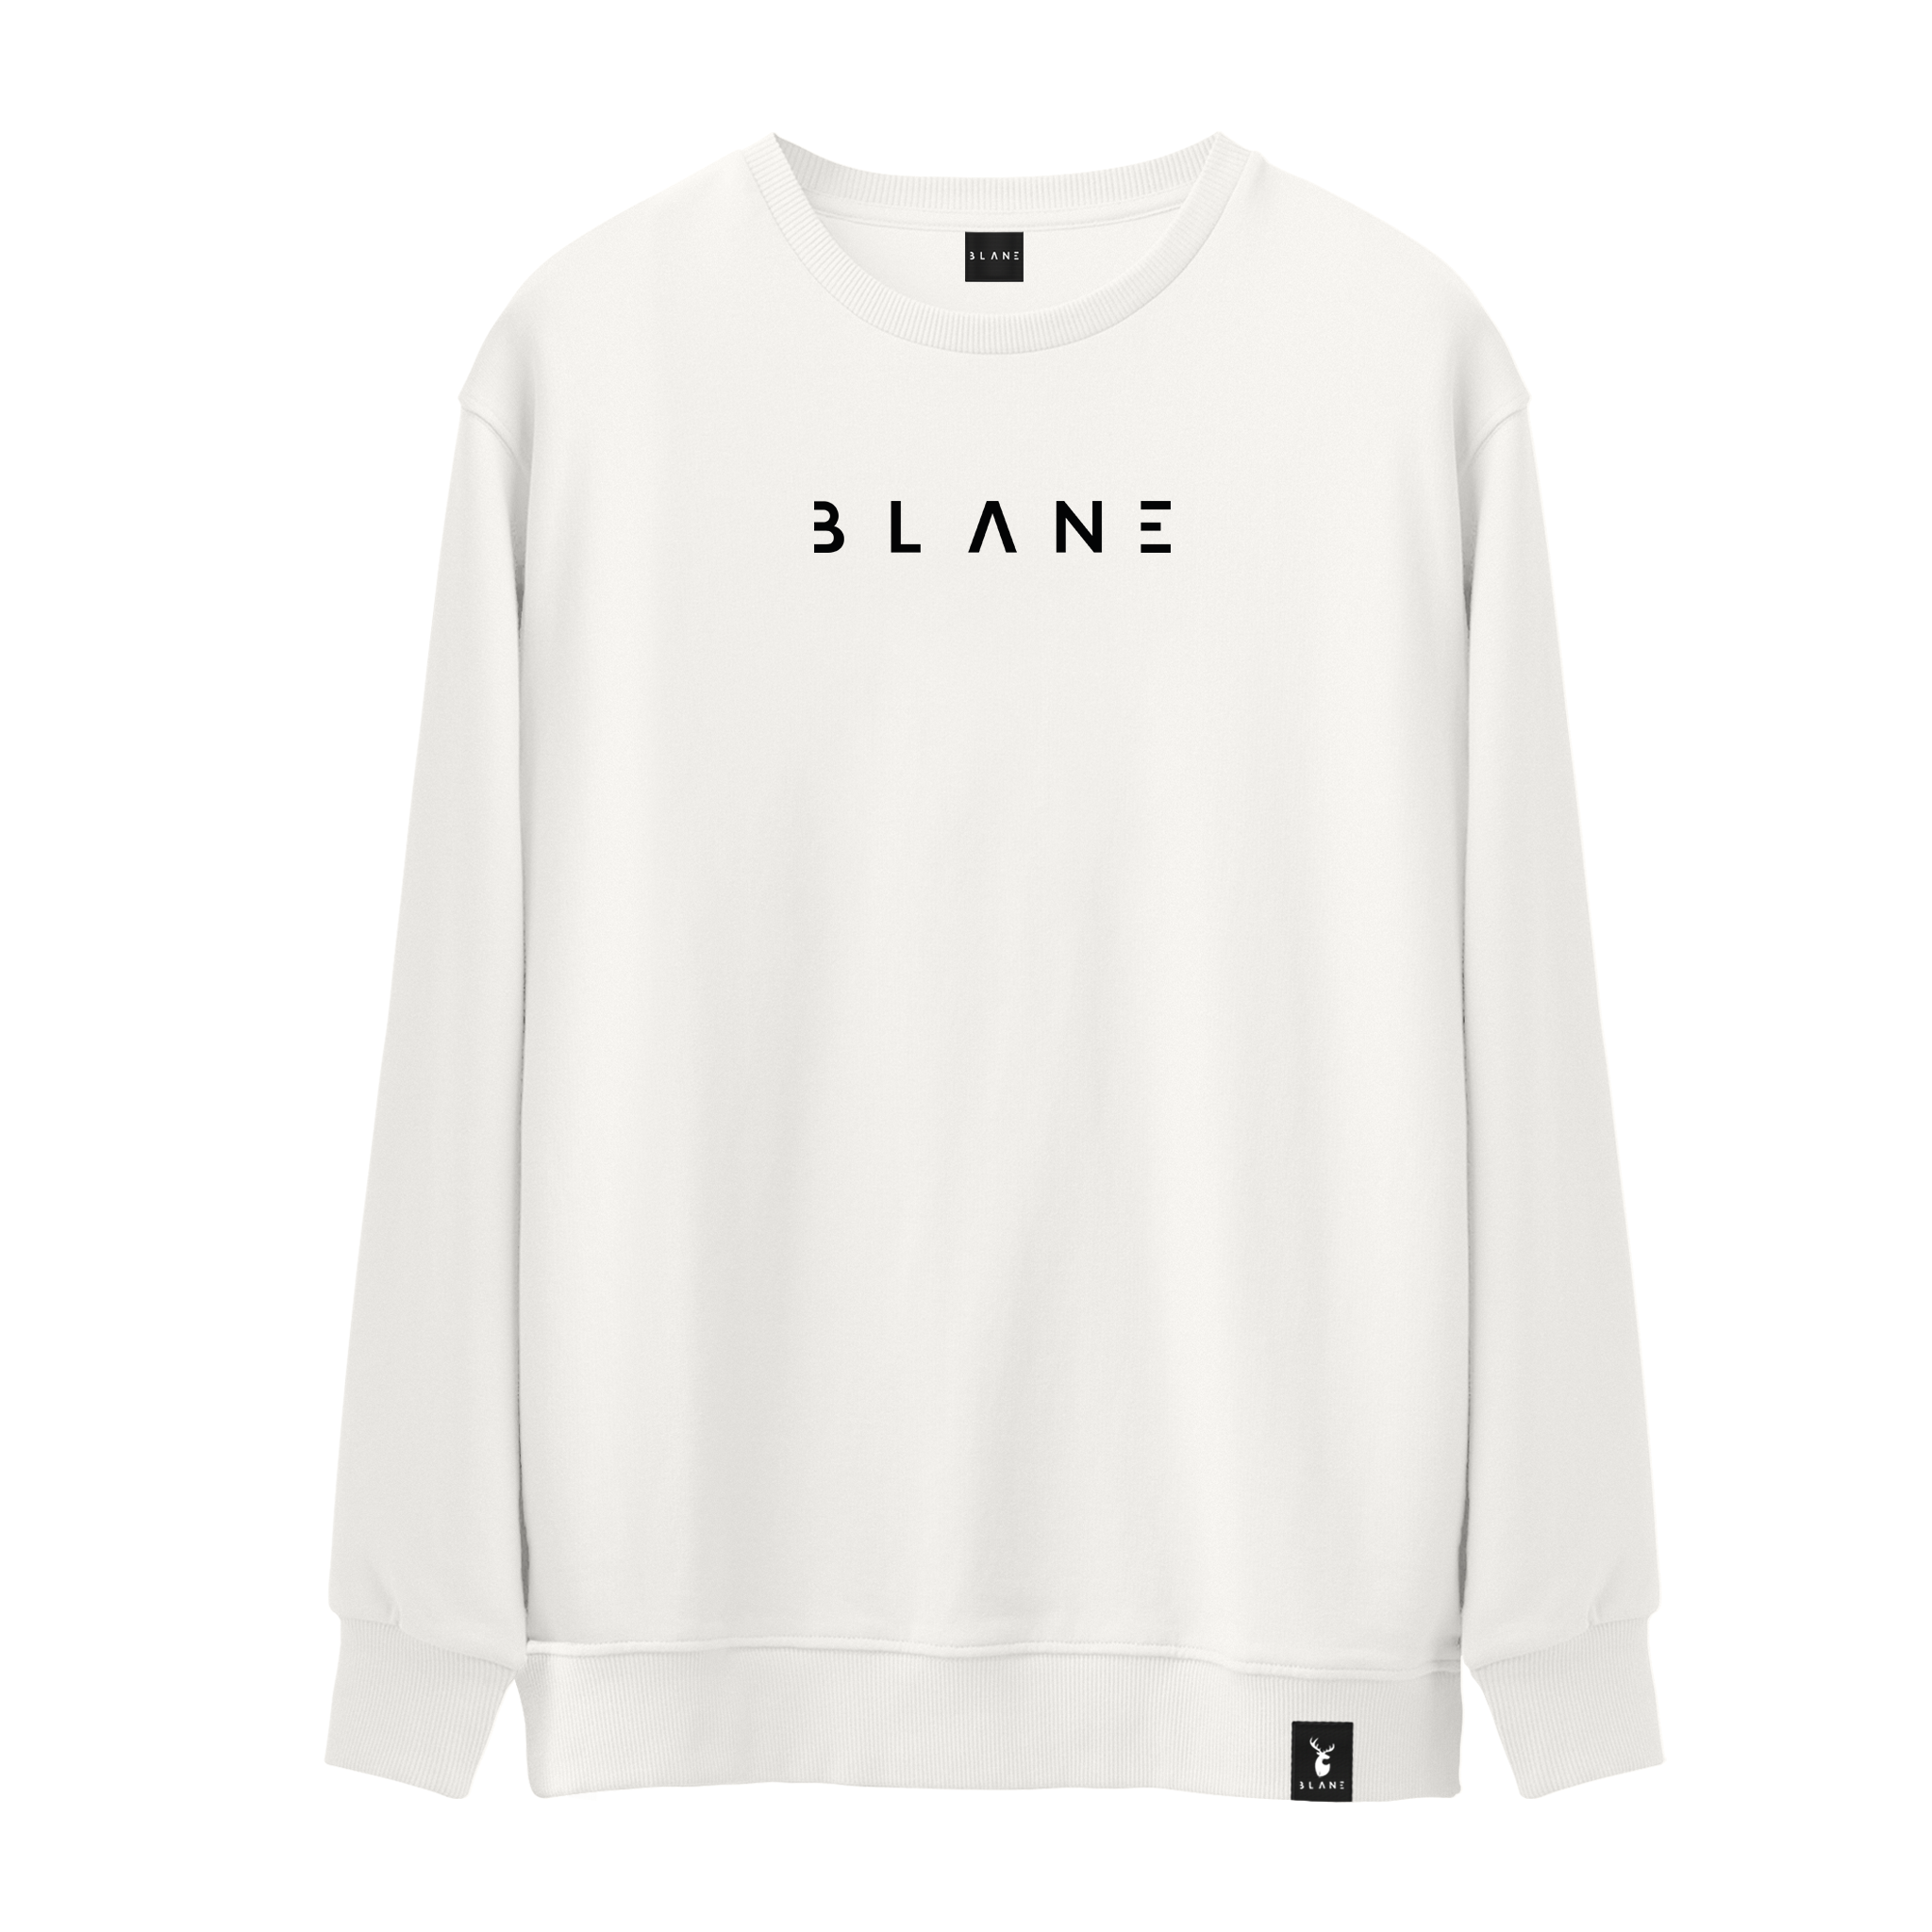 Blane I - Sweatshirt